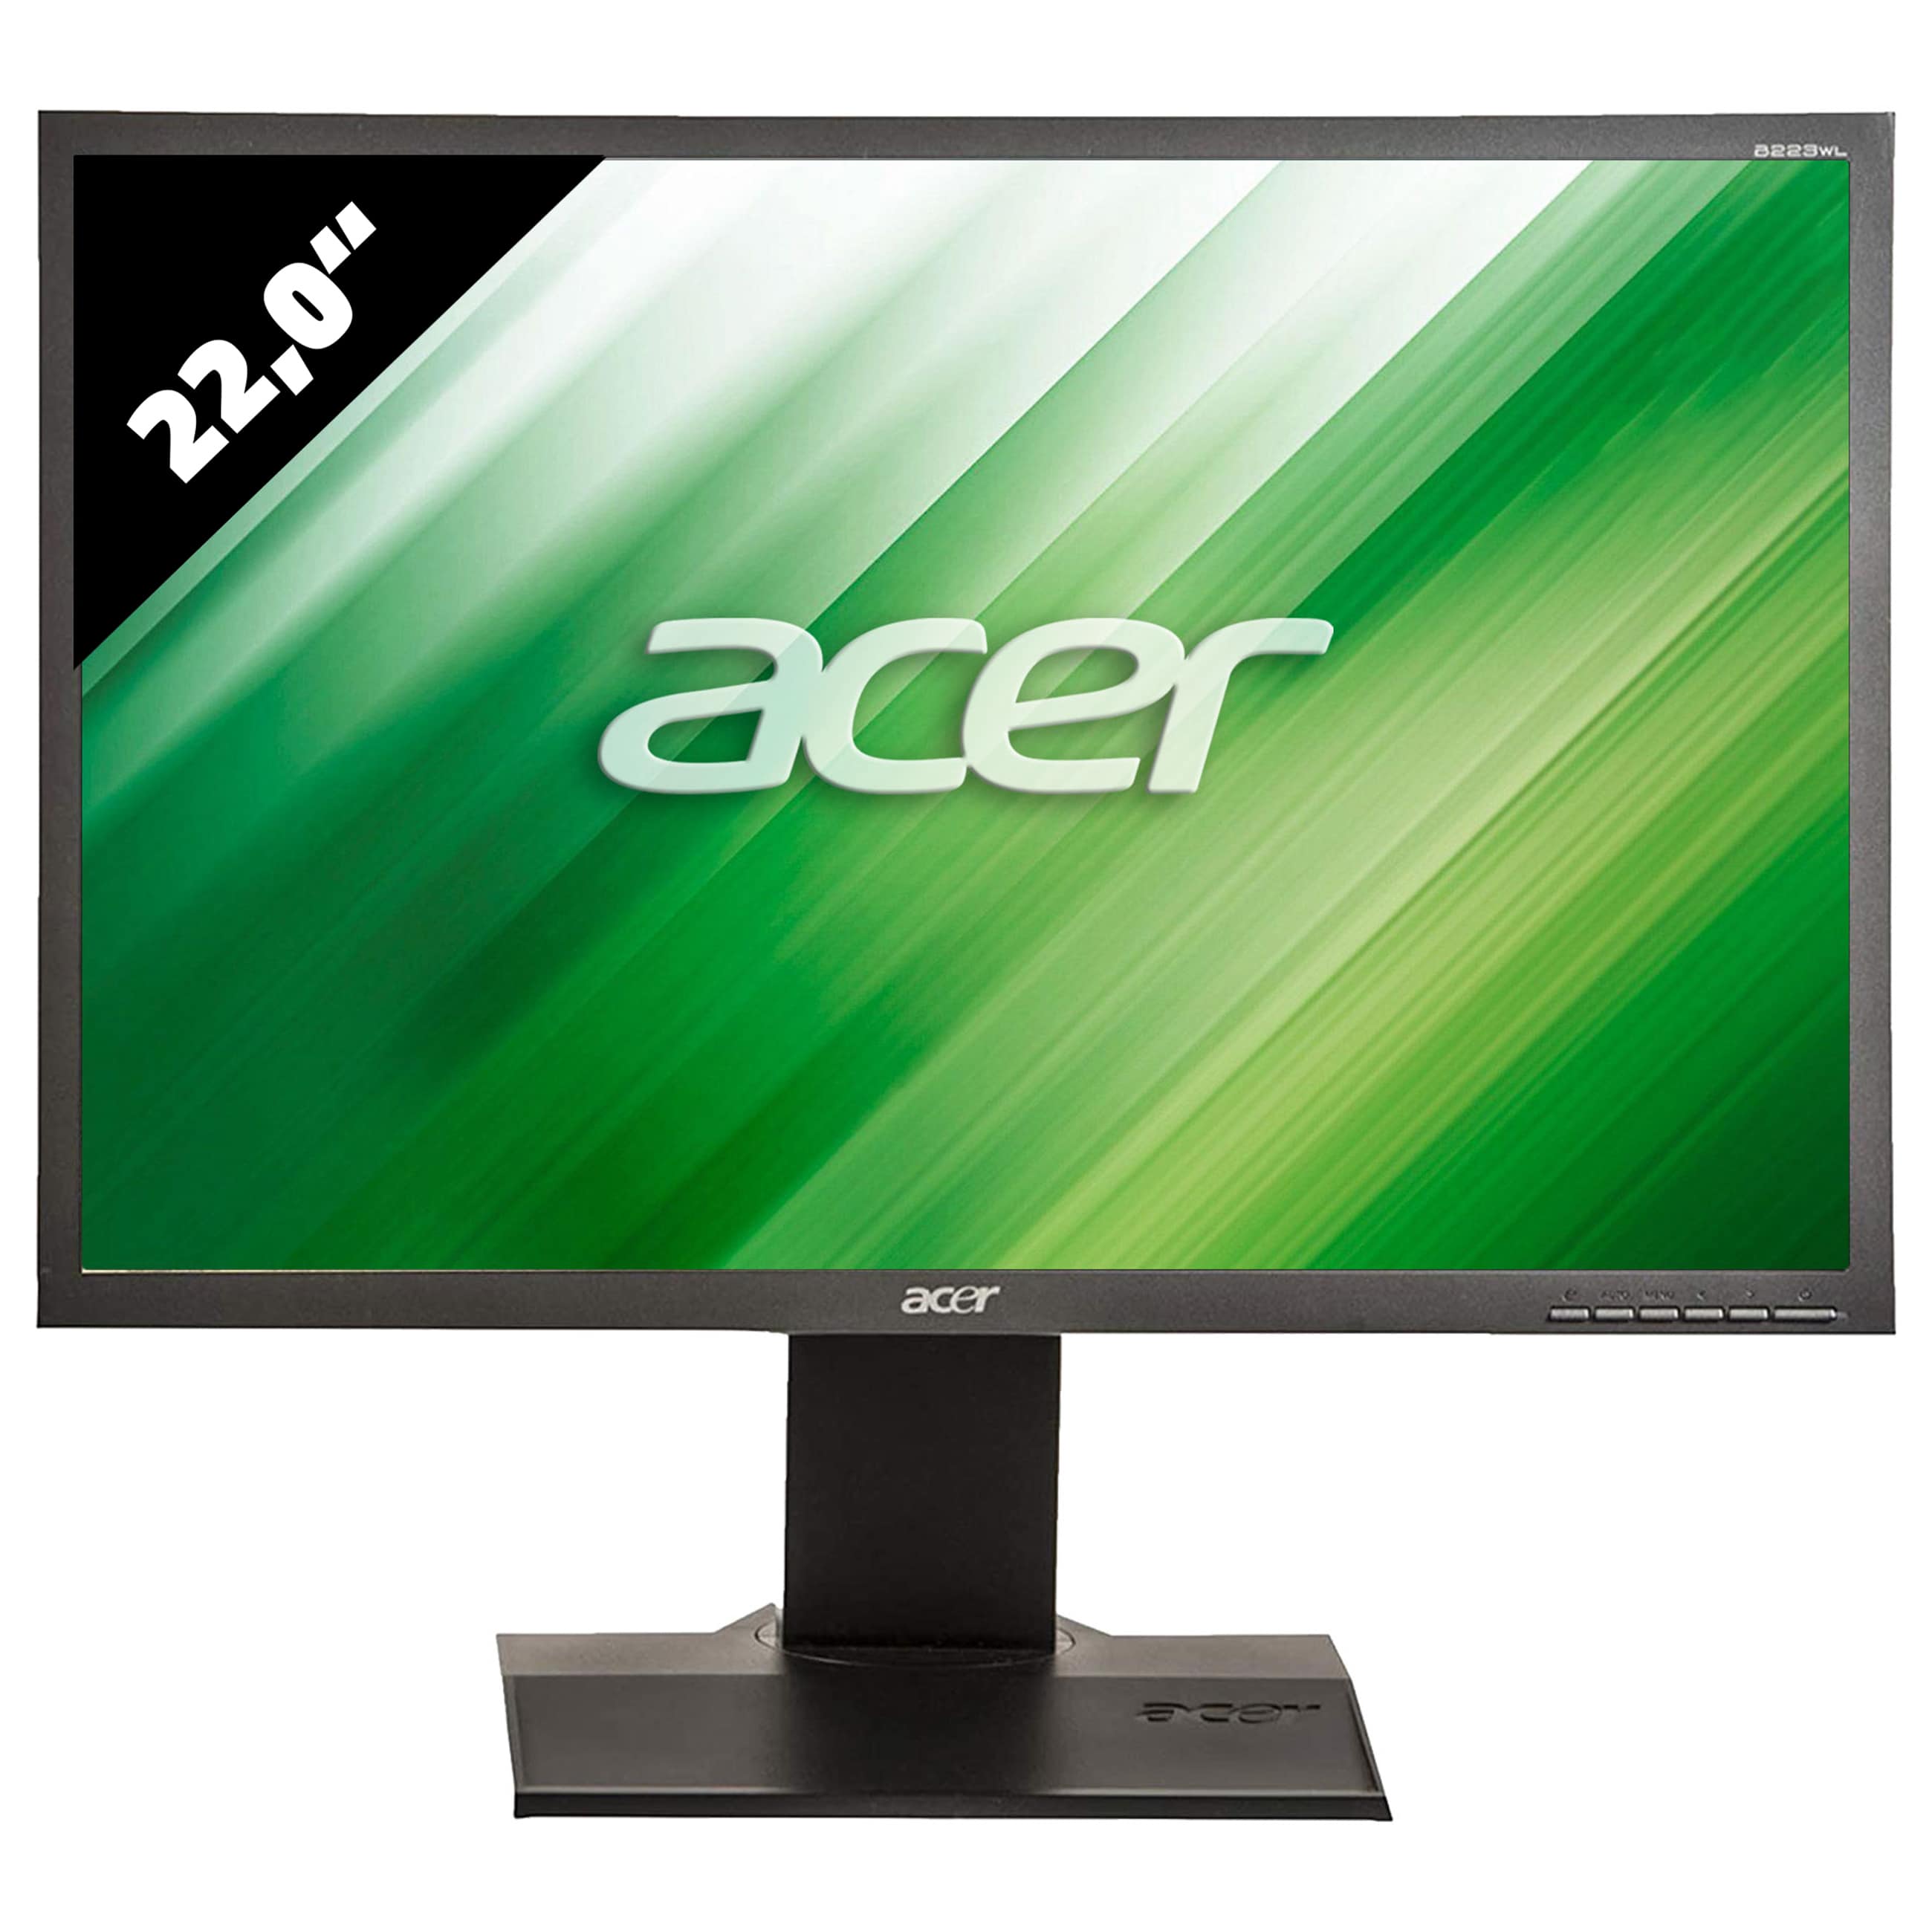 Acer B223WL - 1680 x 1050 - WSXGA+ - 22,0 Zoll - 5 ms - Schwarz